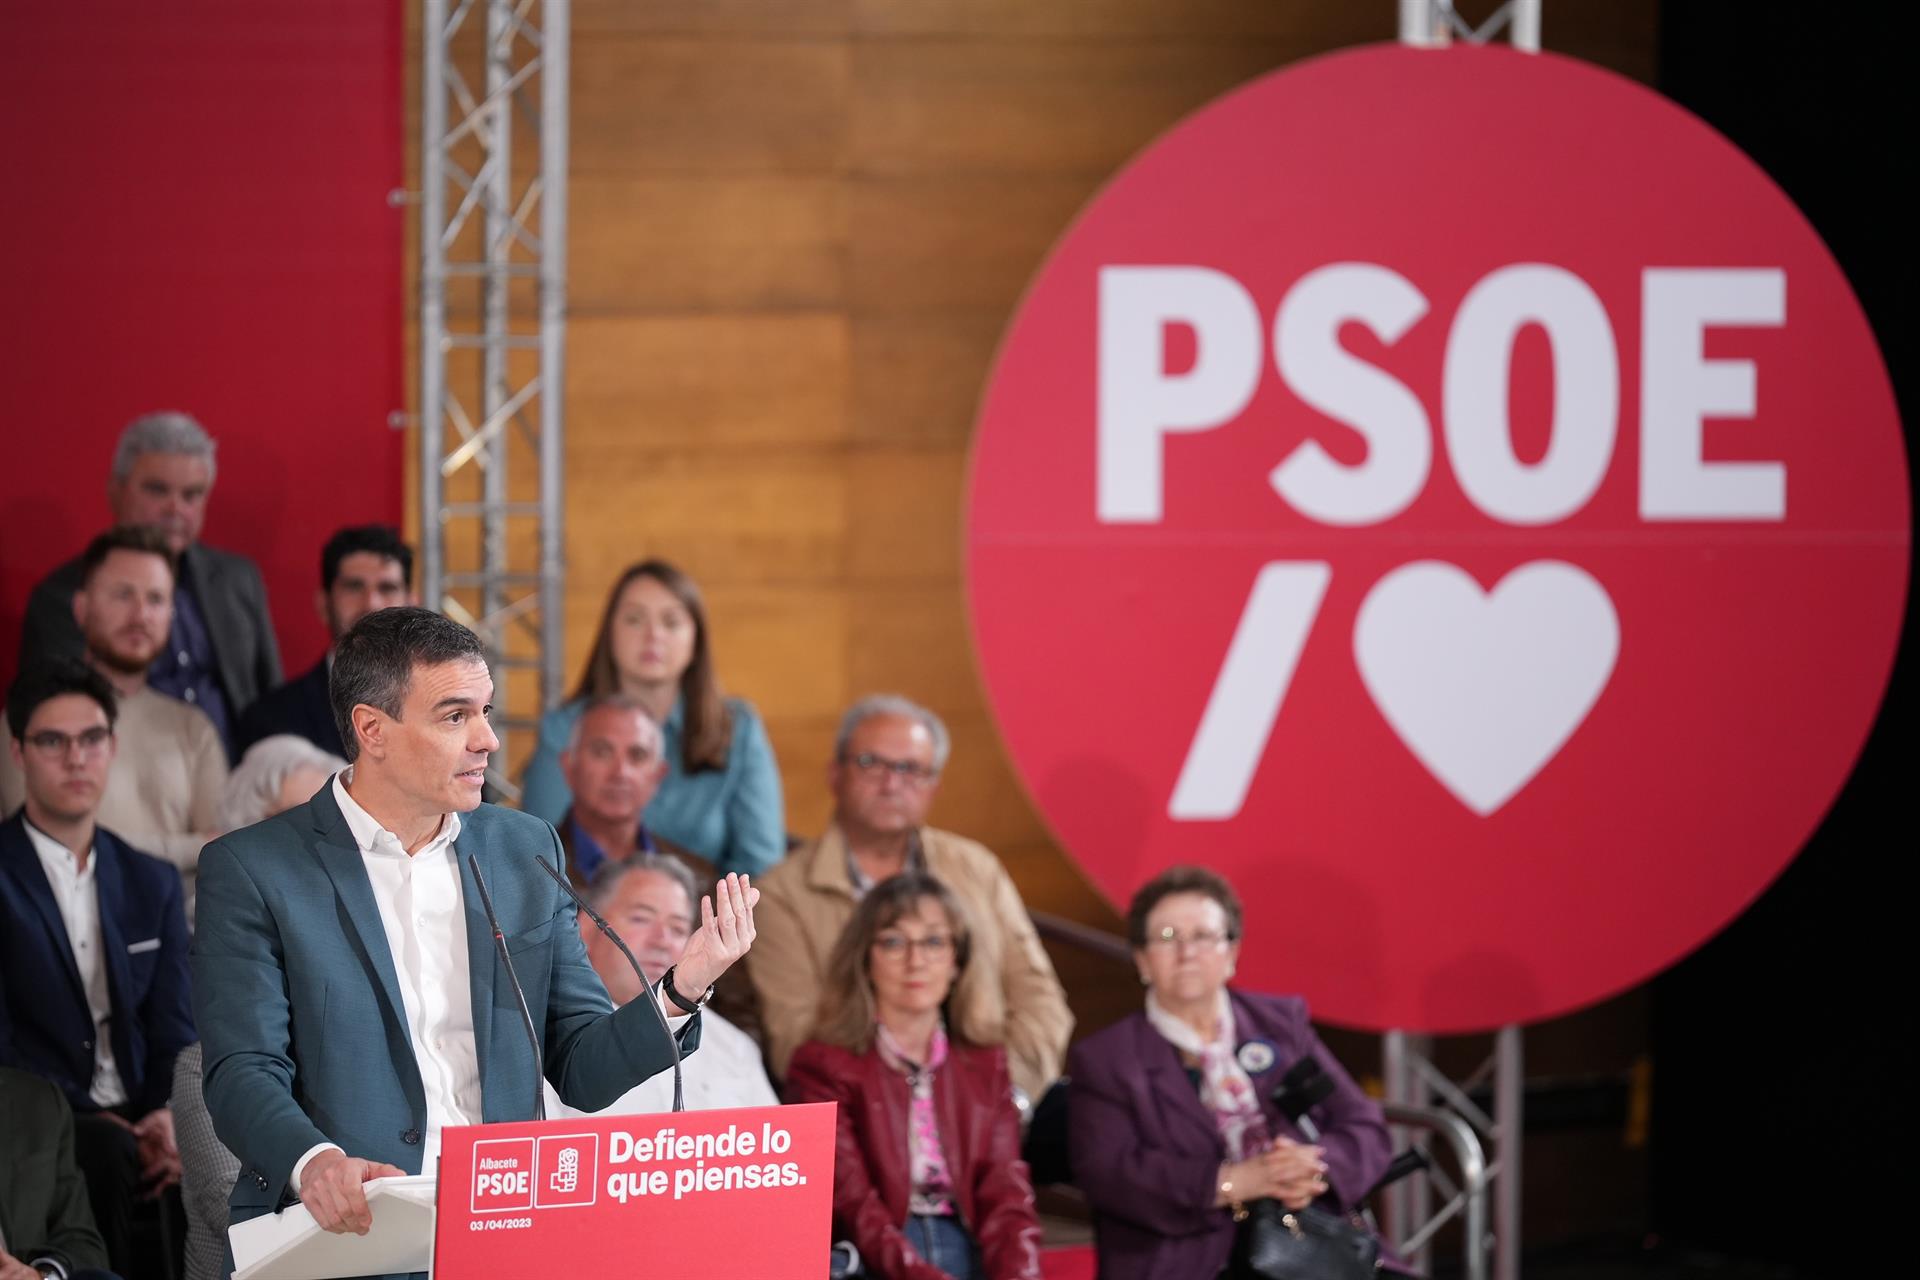 El presidente del Gobierno y secretario general del PSOE, Pedro Sánchez, en un acto en Albacete - EUROPA PRESS/REI SOTOLONGO